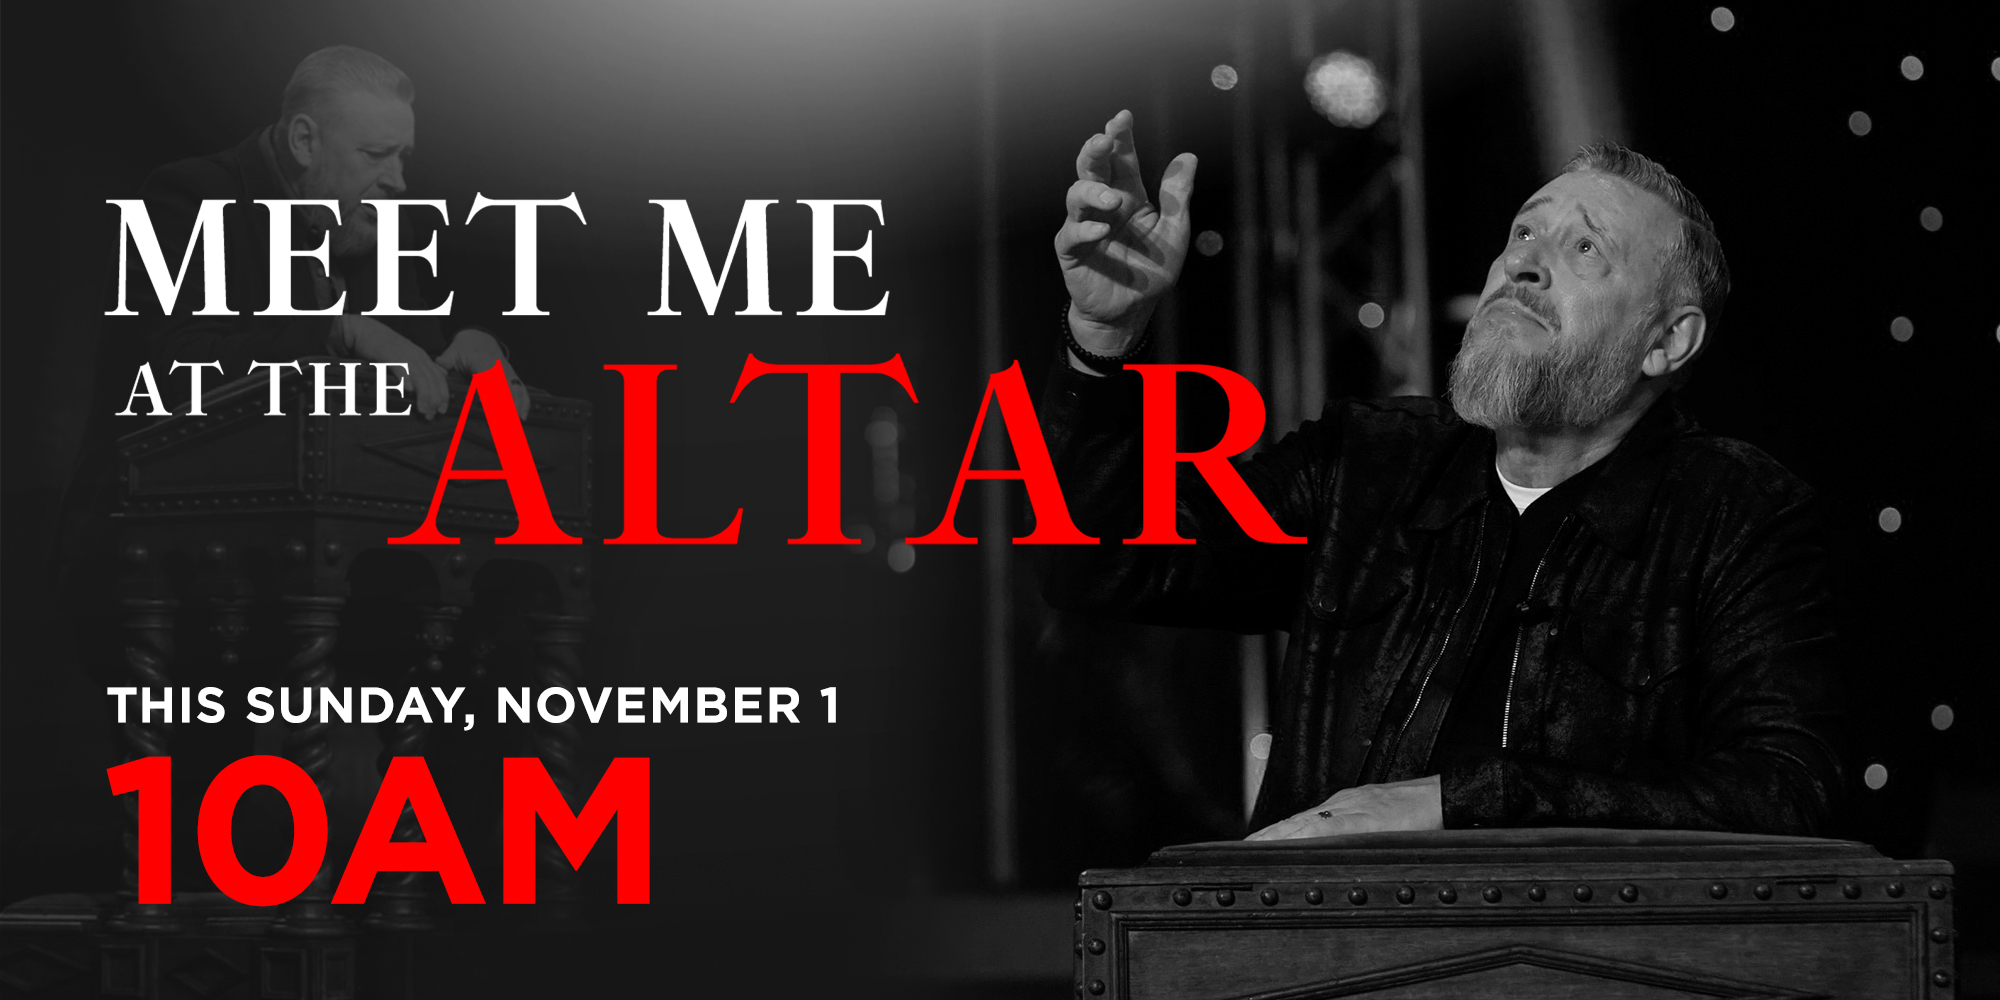 Meet Me at the Alter This Sunday, November 1 At 10AM